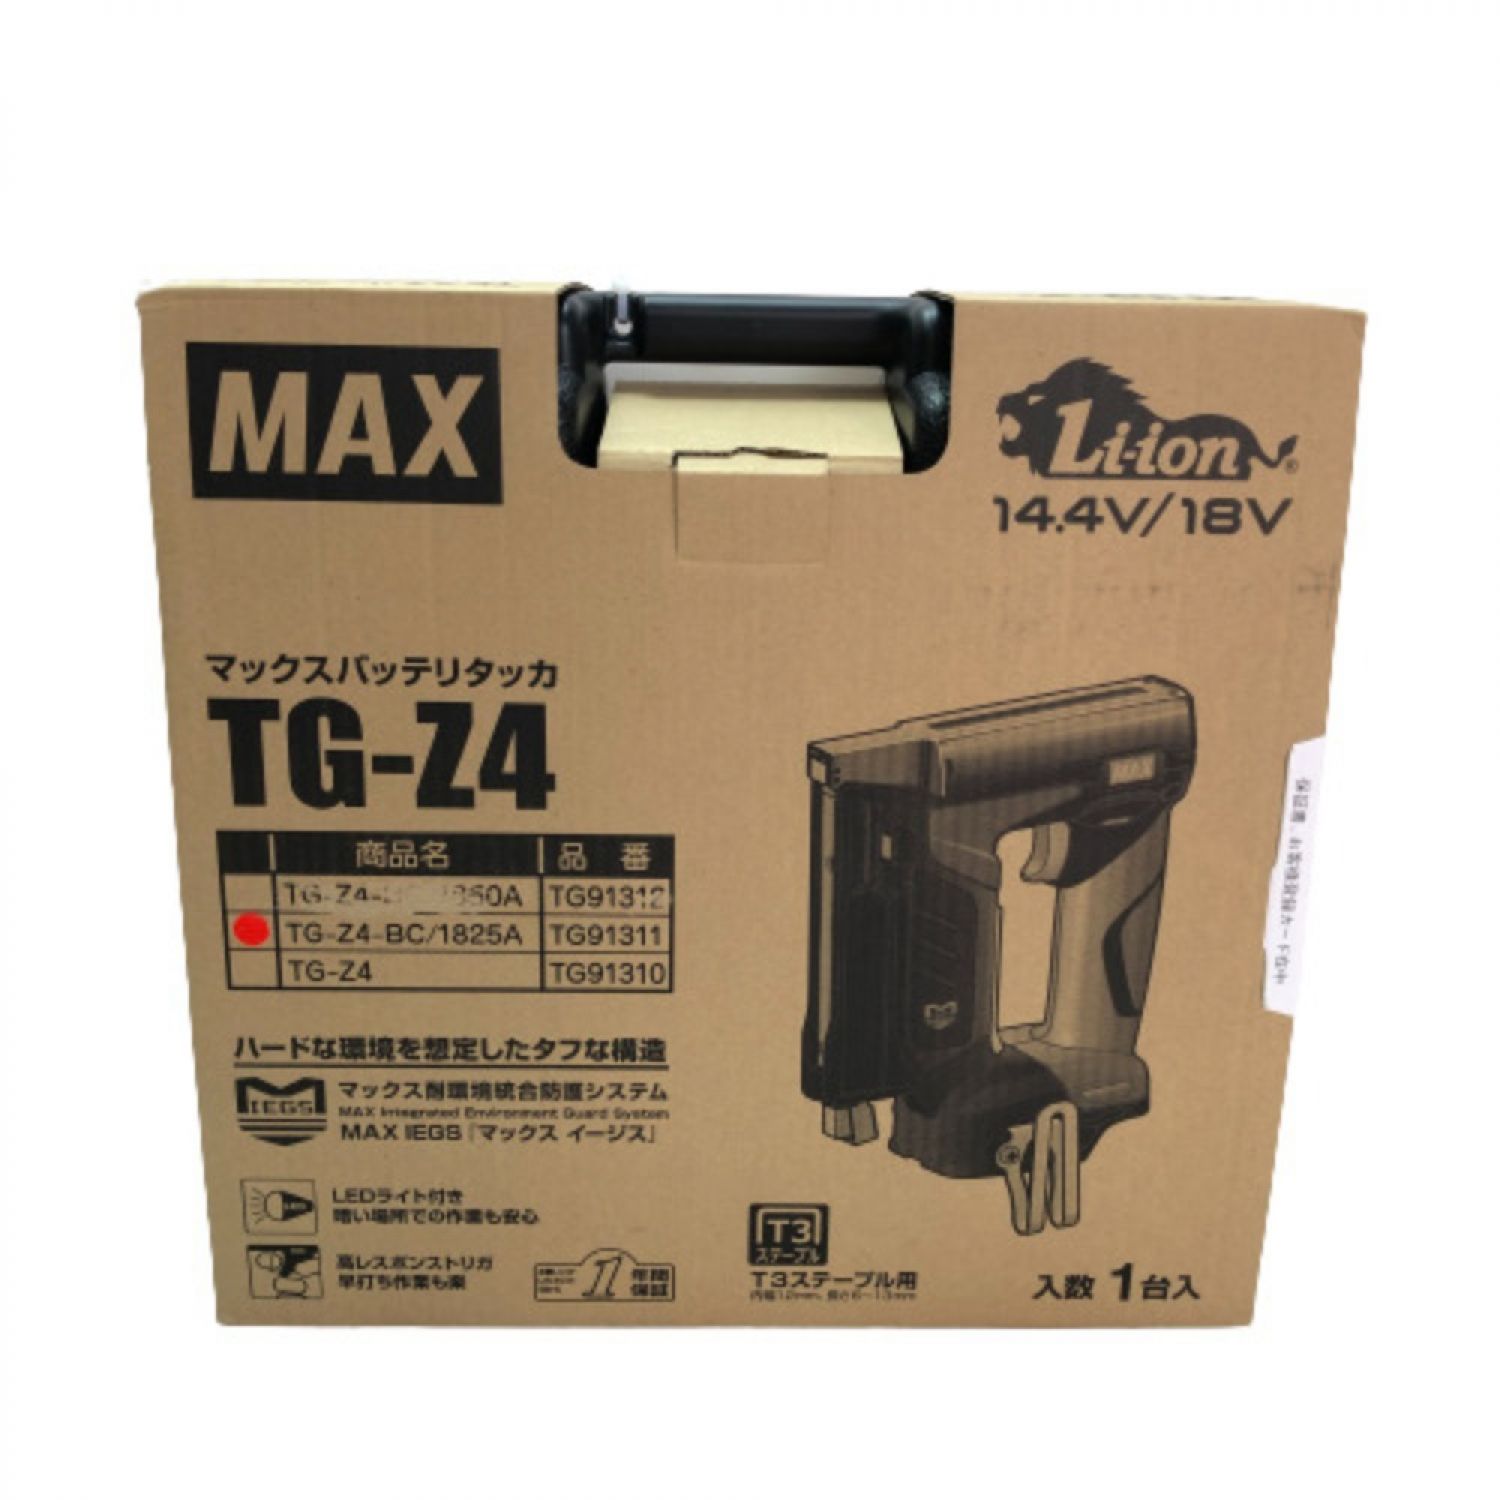 MAX マックス バッテリタッカ 充電器・充電池(18v 2.5Ah)・ケース付 TG-Z4 ブラック Sランク